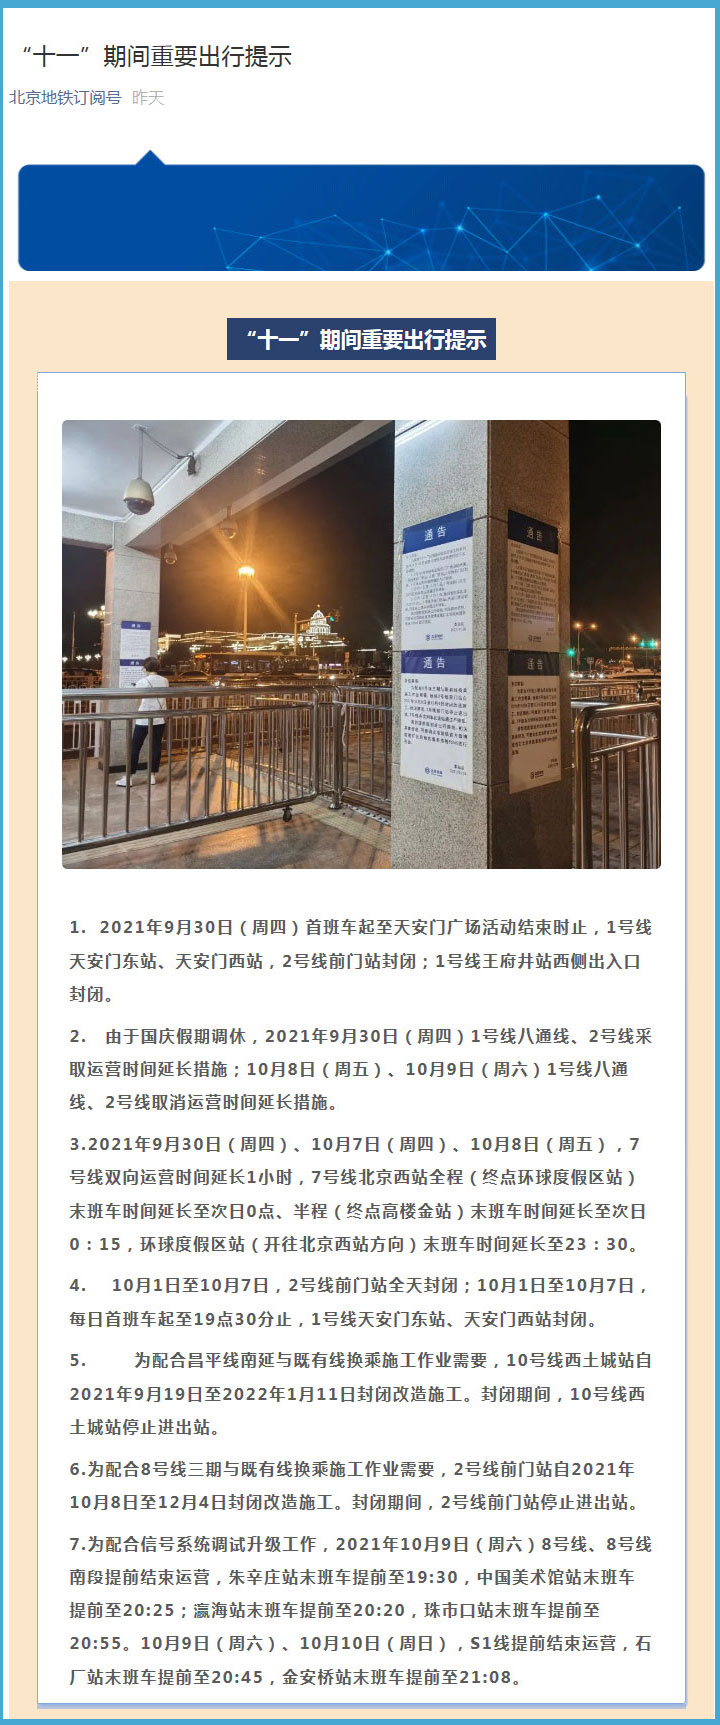 北京地铁发布出行提示  做好运输保障工作